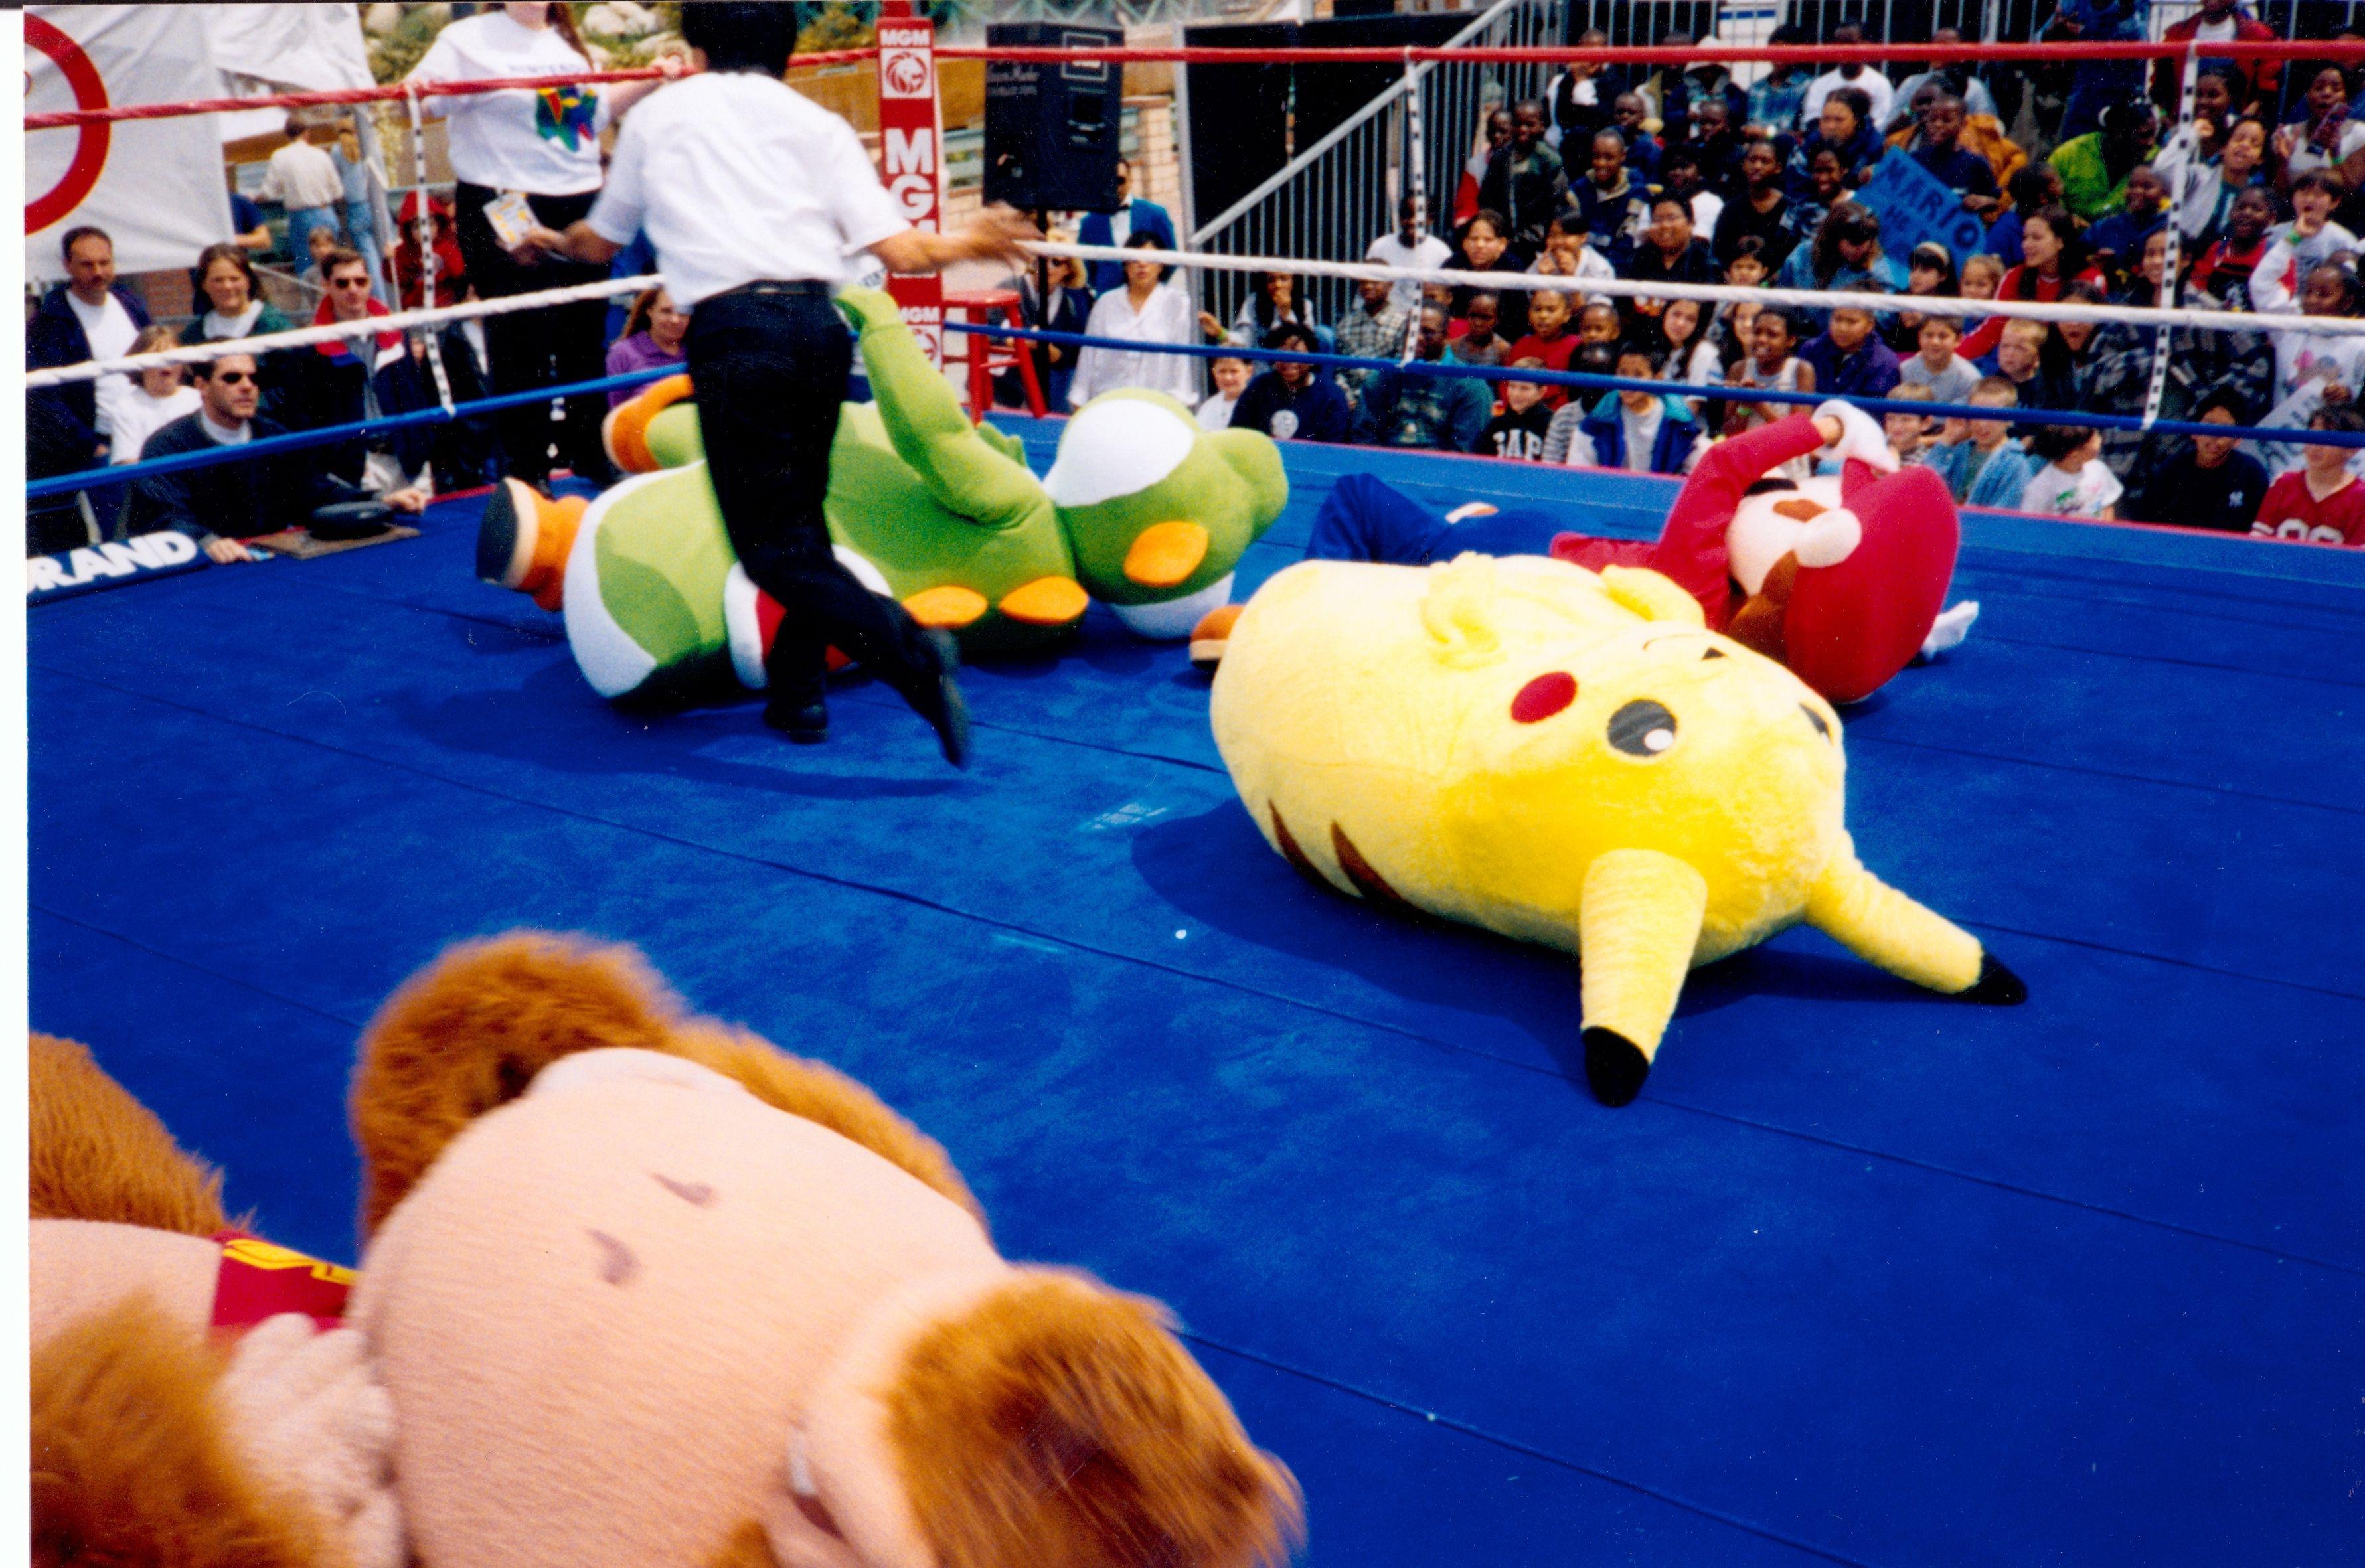 Estranha imagem da Nintendo de 1999 mostra Mario e Pikachu lutando na vida real